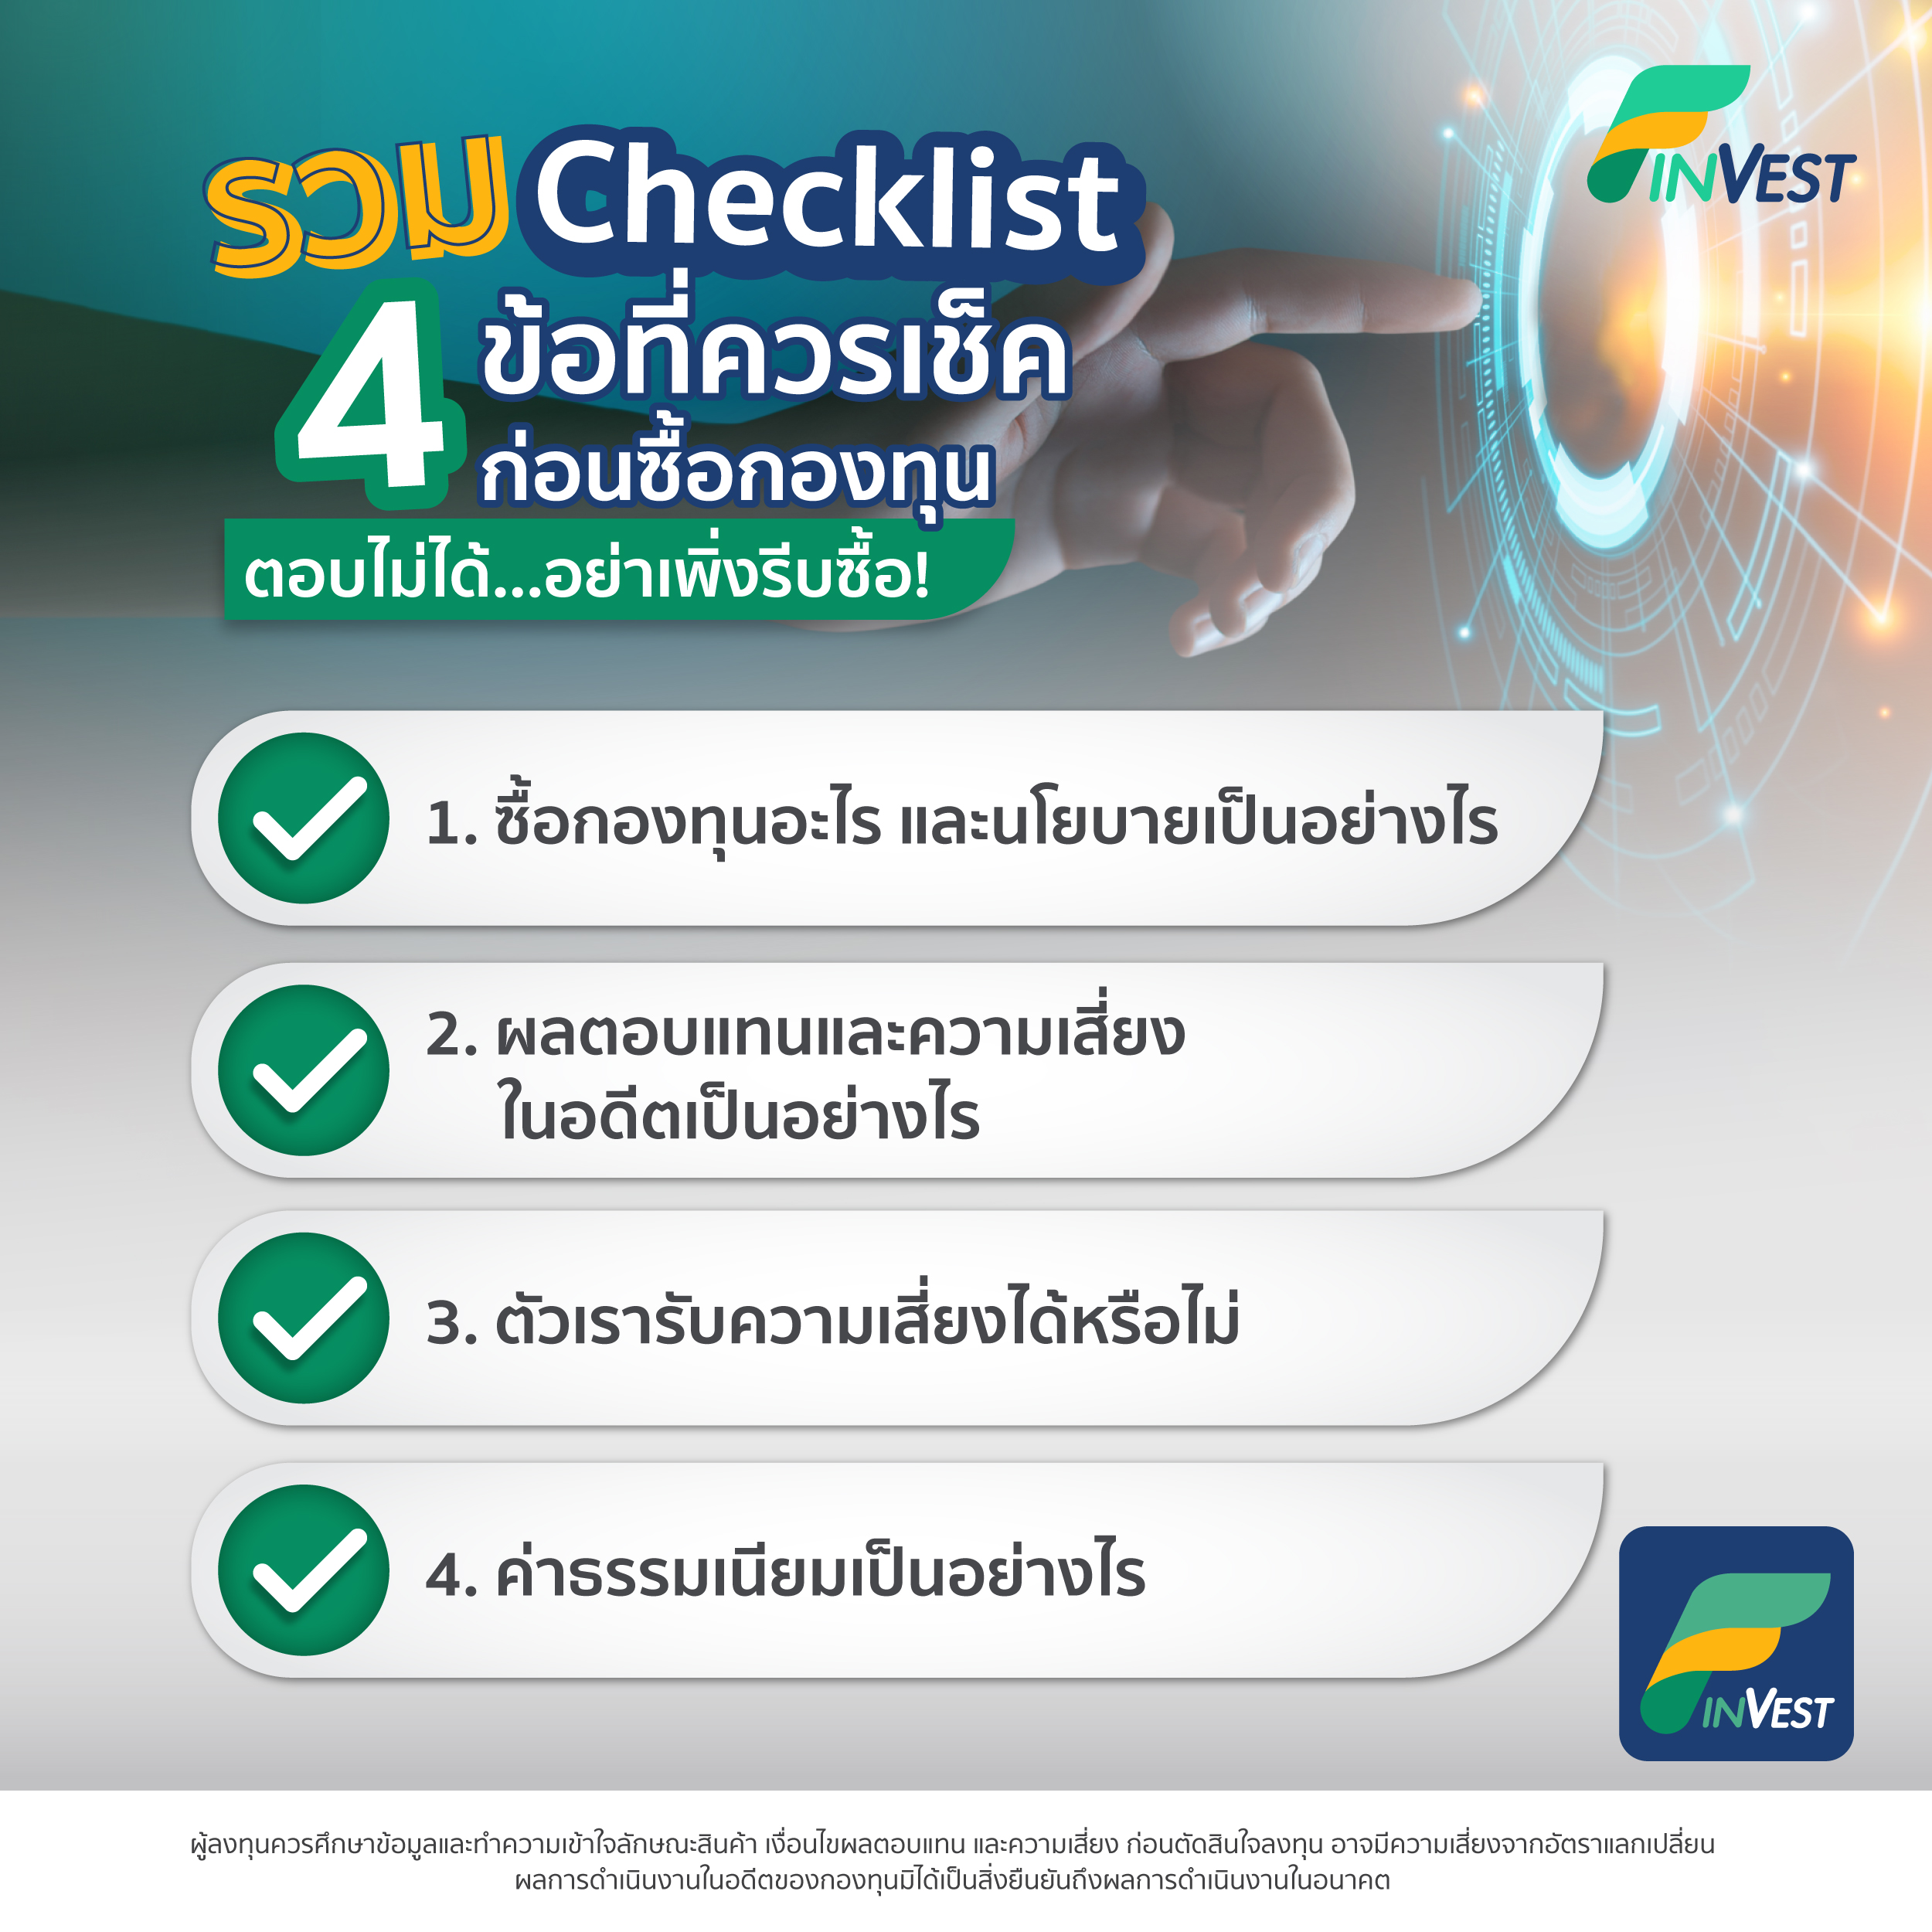 รวม Checklist 4 ข้อที่ควรเช็คก่อนซื้อกองทุน - ชี้เป้าการลงทุนทั่วโลก ผ่านกอง ในไทยและลงตรงต่างประเทศ รวบรวมข้อมูลกองทุนและข่าวสารการลงทุนทั่วโลก  เปรียบเทียบผลตอบแทน จัดอันดับกองทุน สร้างวินัยลงทุนด้วย Dca ได้ทุกกอง ลงทุนขั้นต่ำตามจริงของกองทุน  เริ่มต้น ...